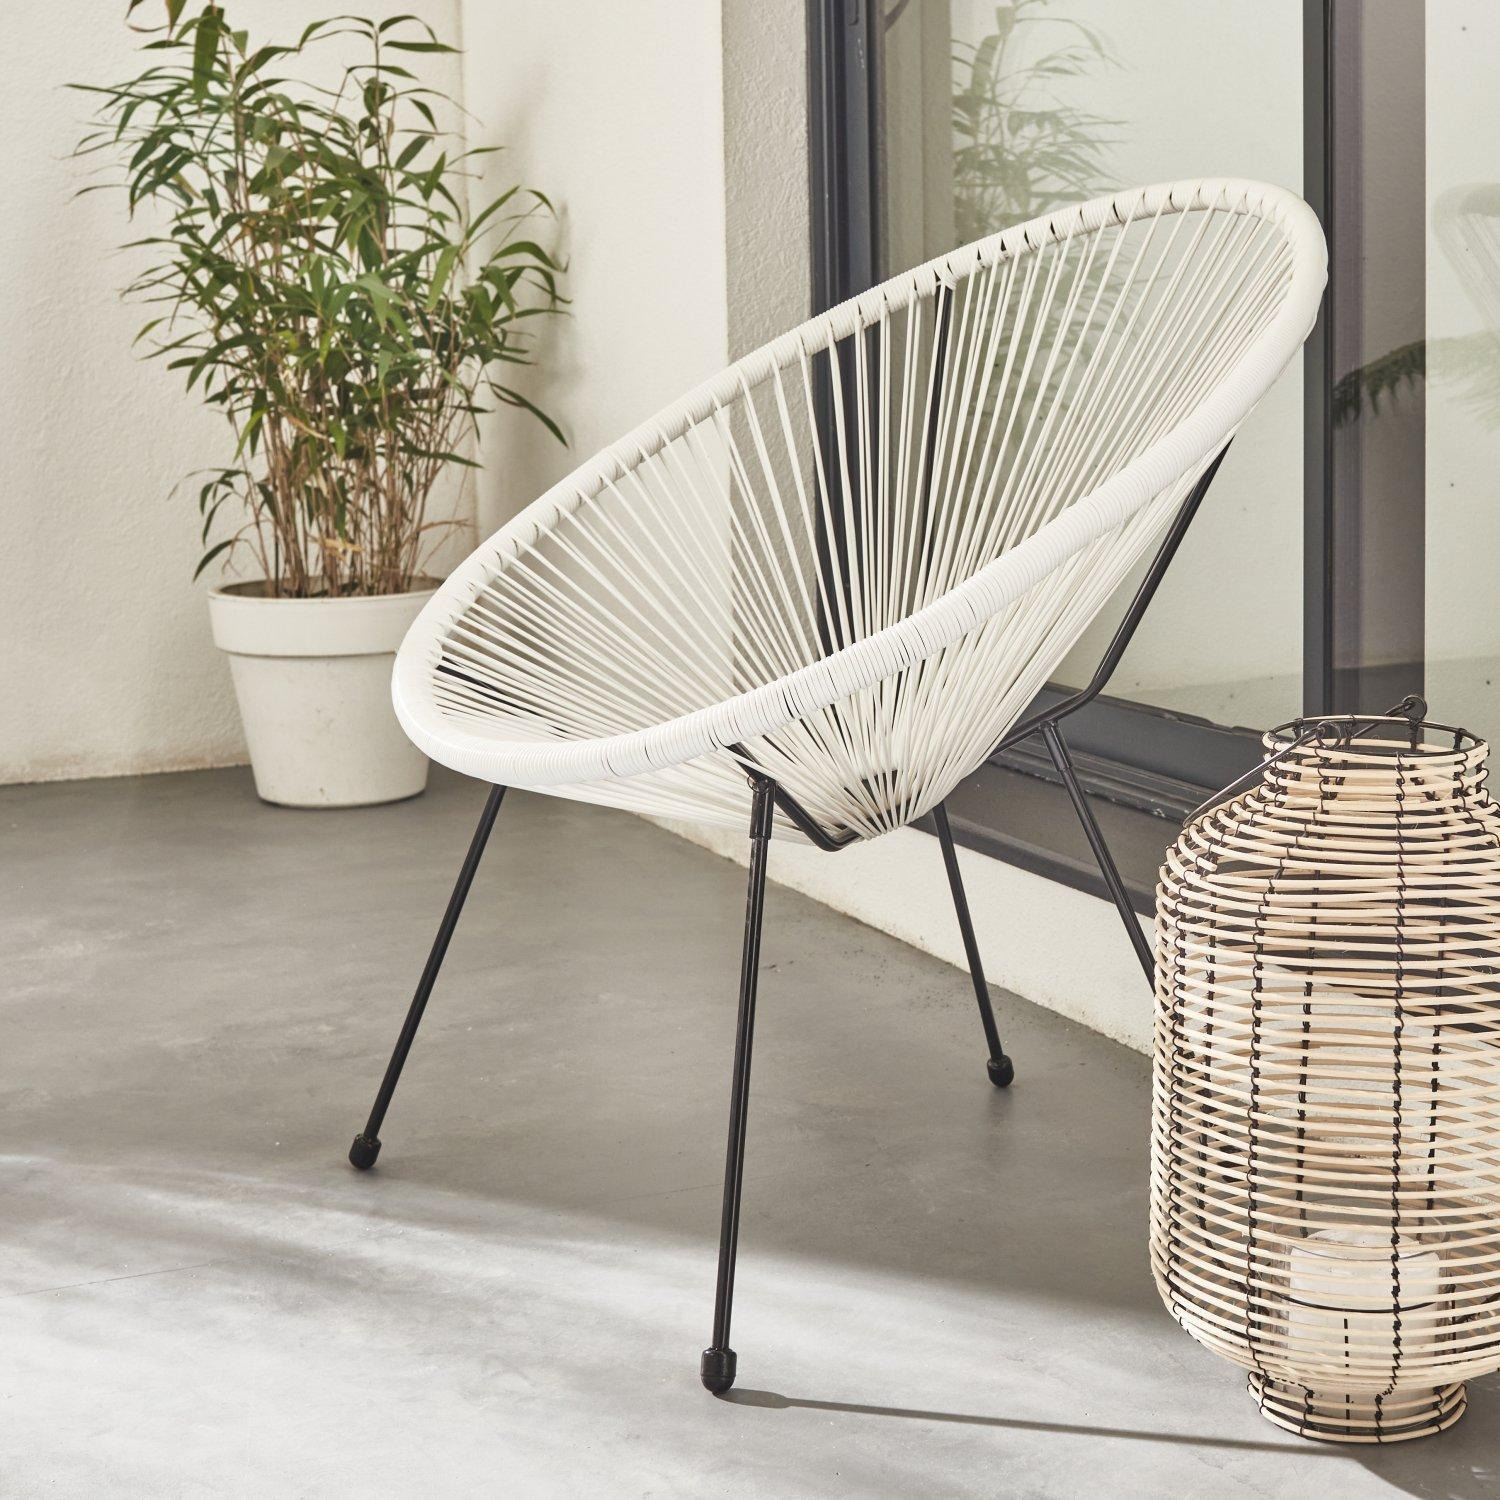 Designer Egg-style String Chair - image 1